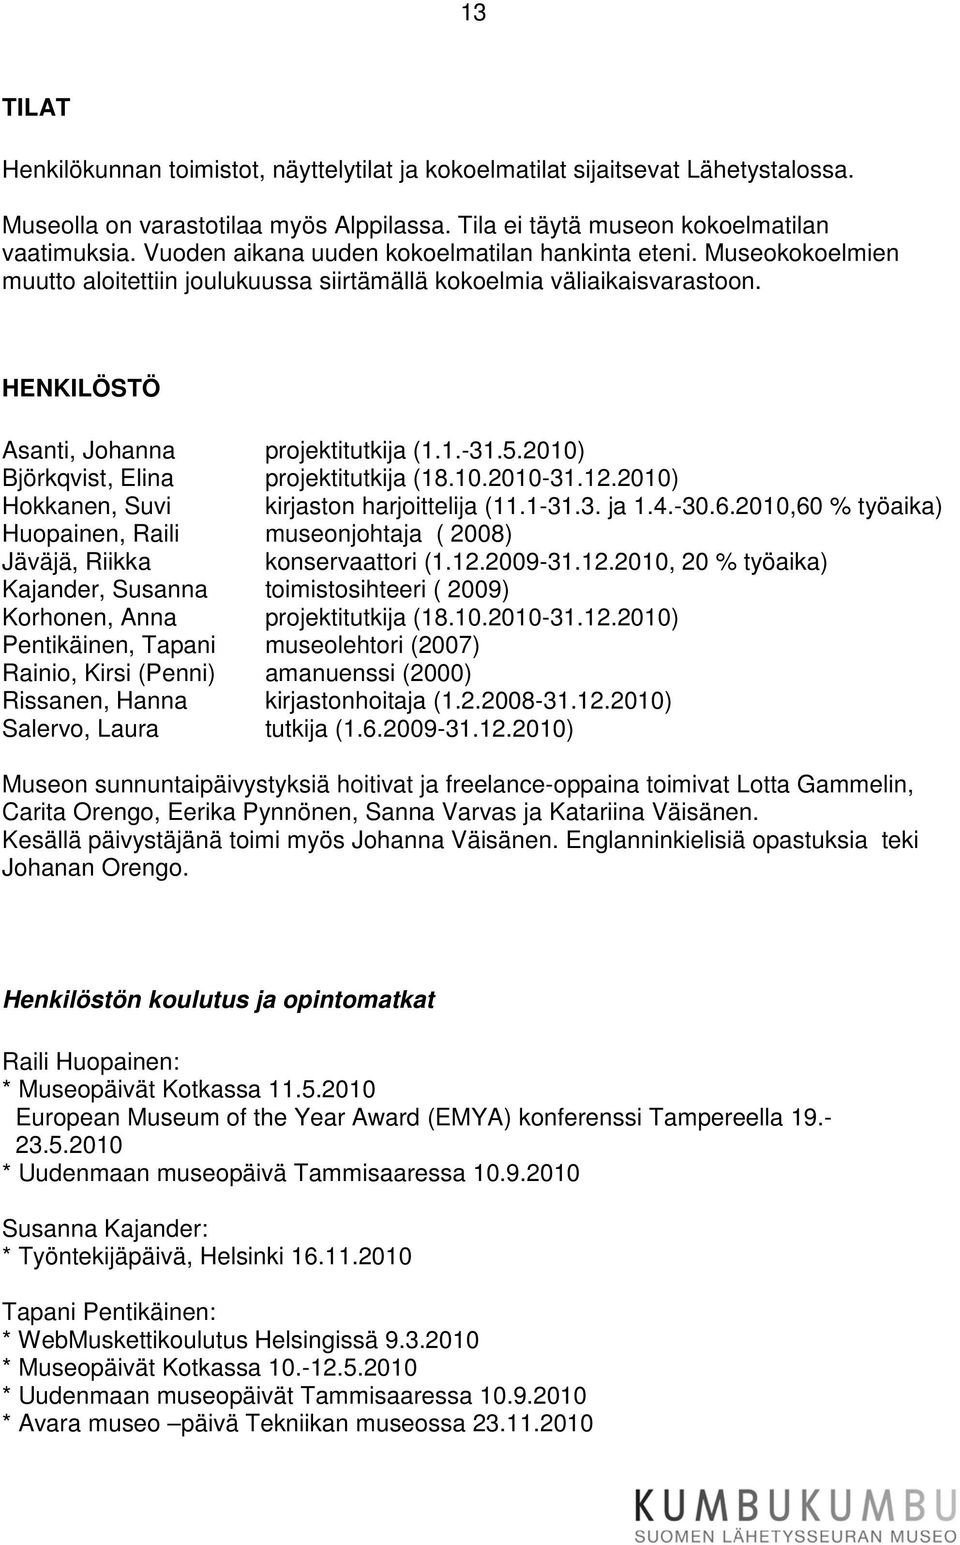 2010) Björkqvist, Elina projektitutkija (18.10.2010-31.12.2010) Hokkanen, Suvi kirjaston harjoittelija (11.1-31.3. ja 1.4.-30.6.